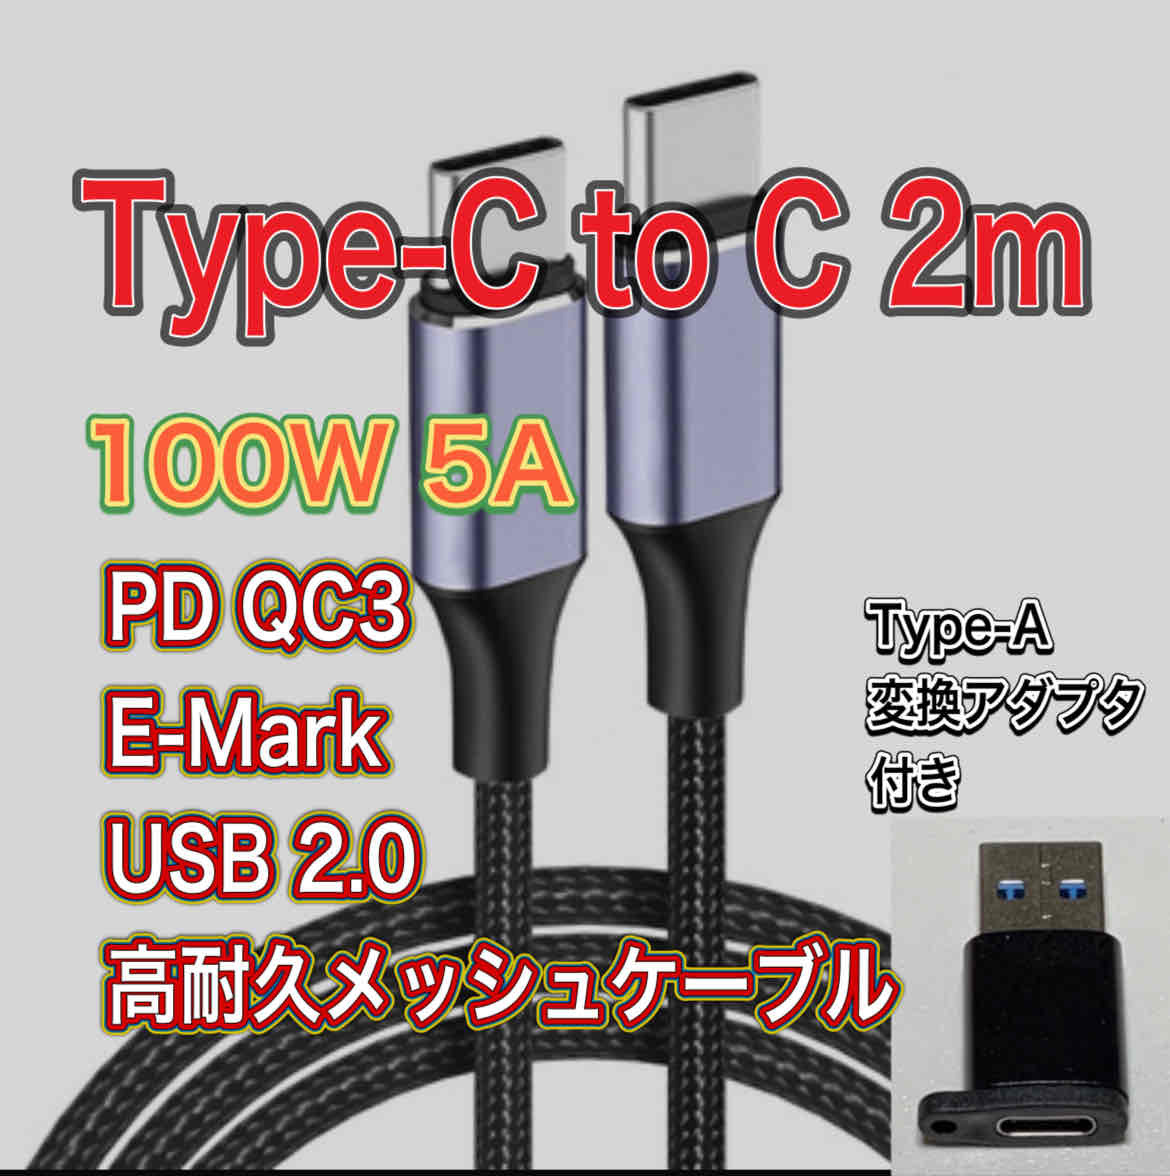 新品 Type-C to C 2m 100W 5A 急速充電 データケーブルUSB2.0 QC3.0 PD TYpe-A アダプター付き 送料無料_画像1